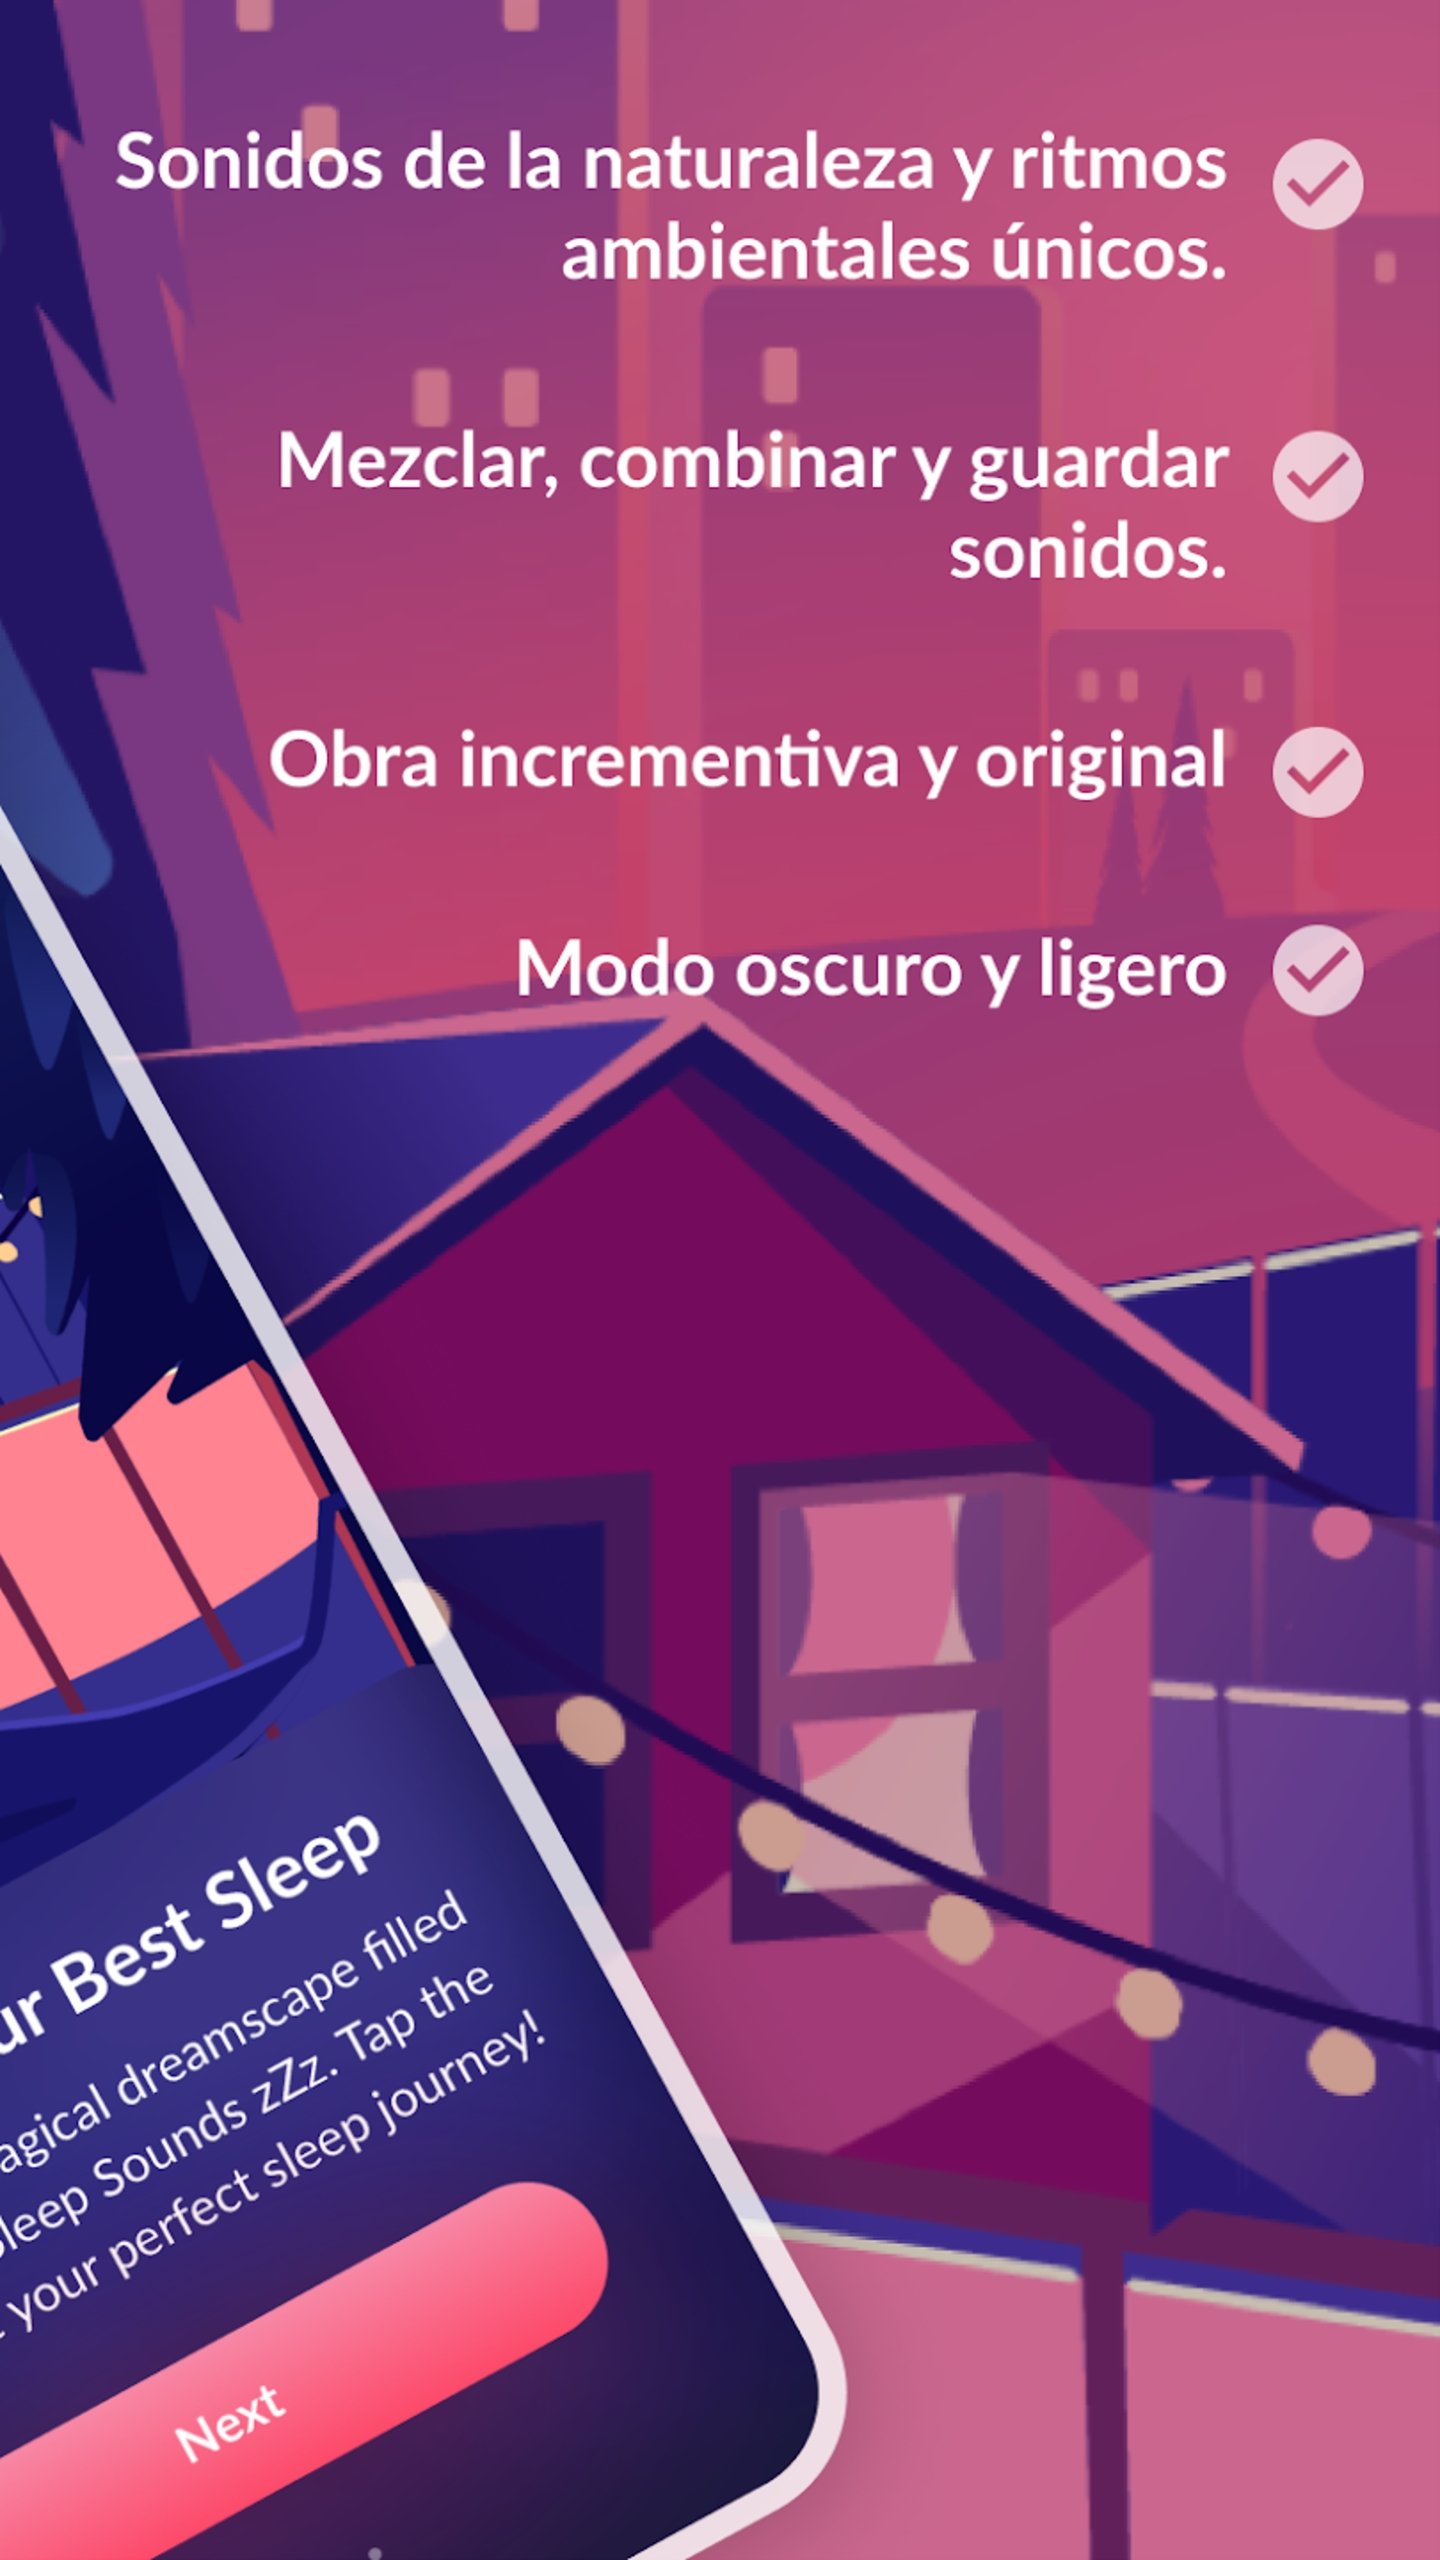 Imagen promocional de la app Sonidos para dormir